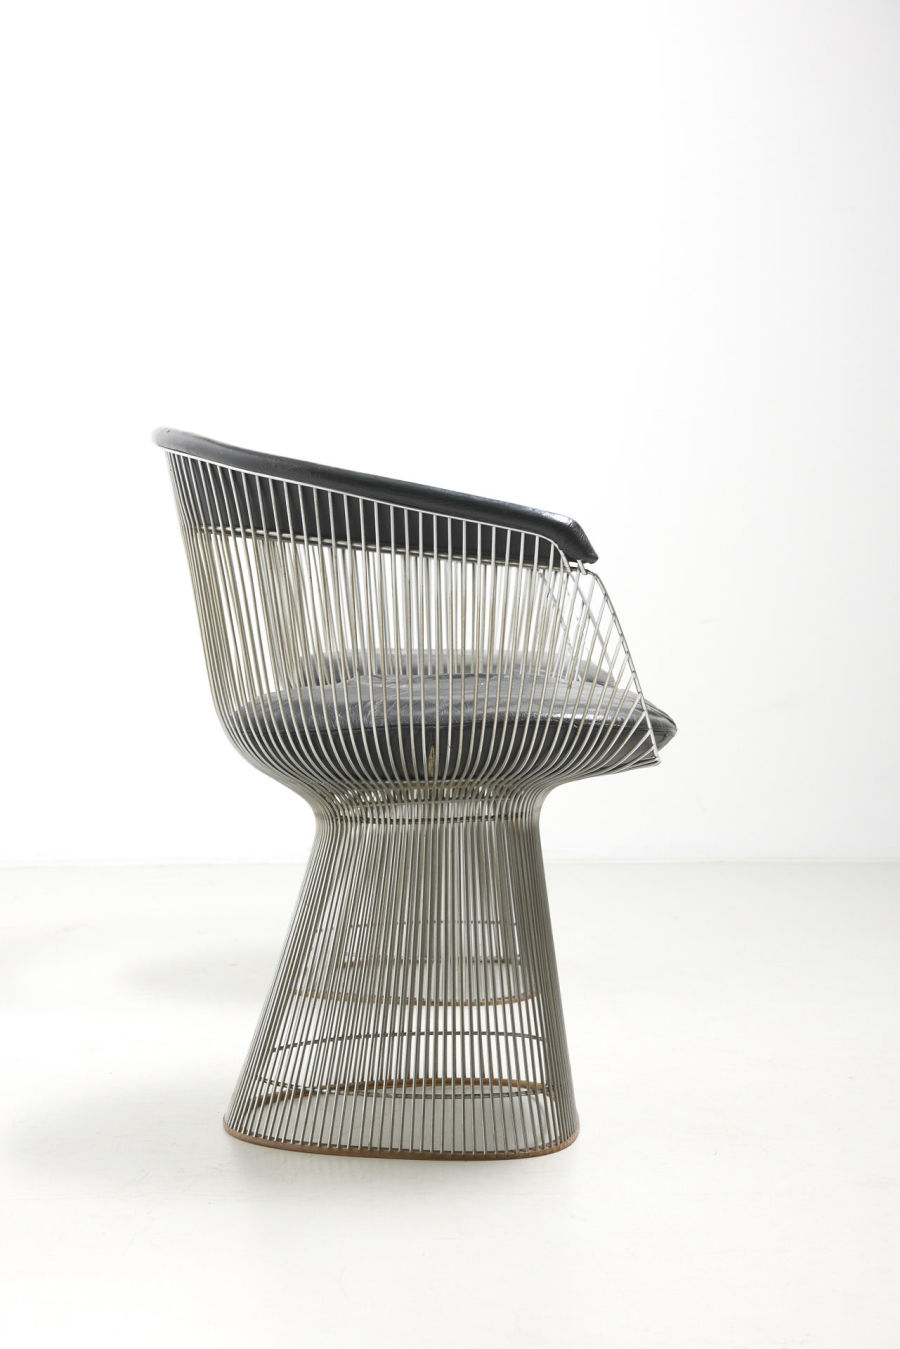 modestfurniture-vintage-2212-warren-platner-chairs-knoll03